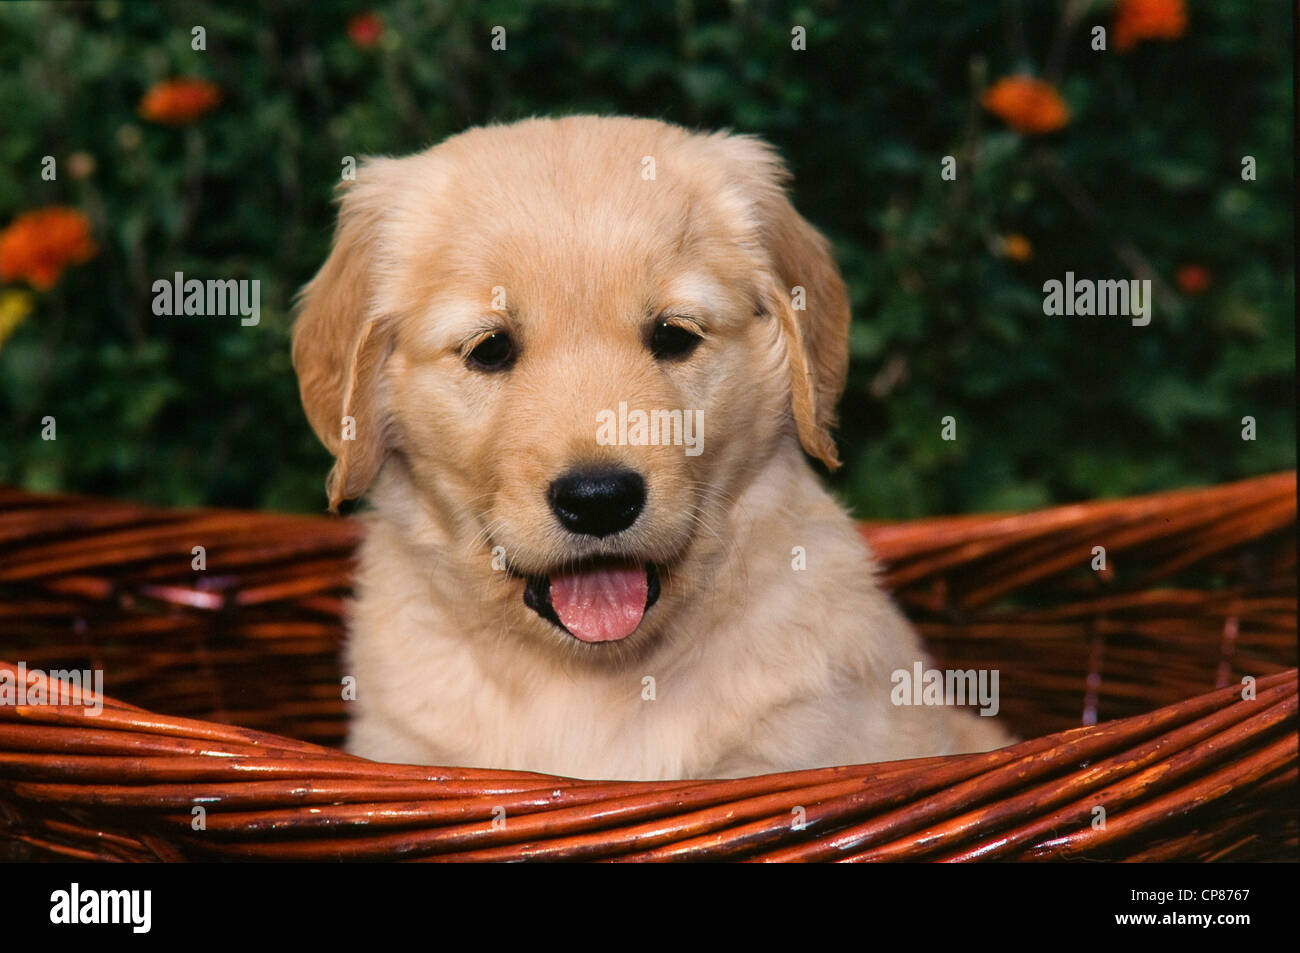 Golden Retriever puppy in basket Stock Photo